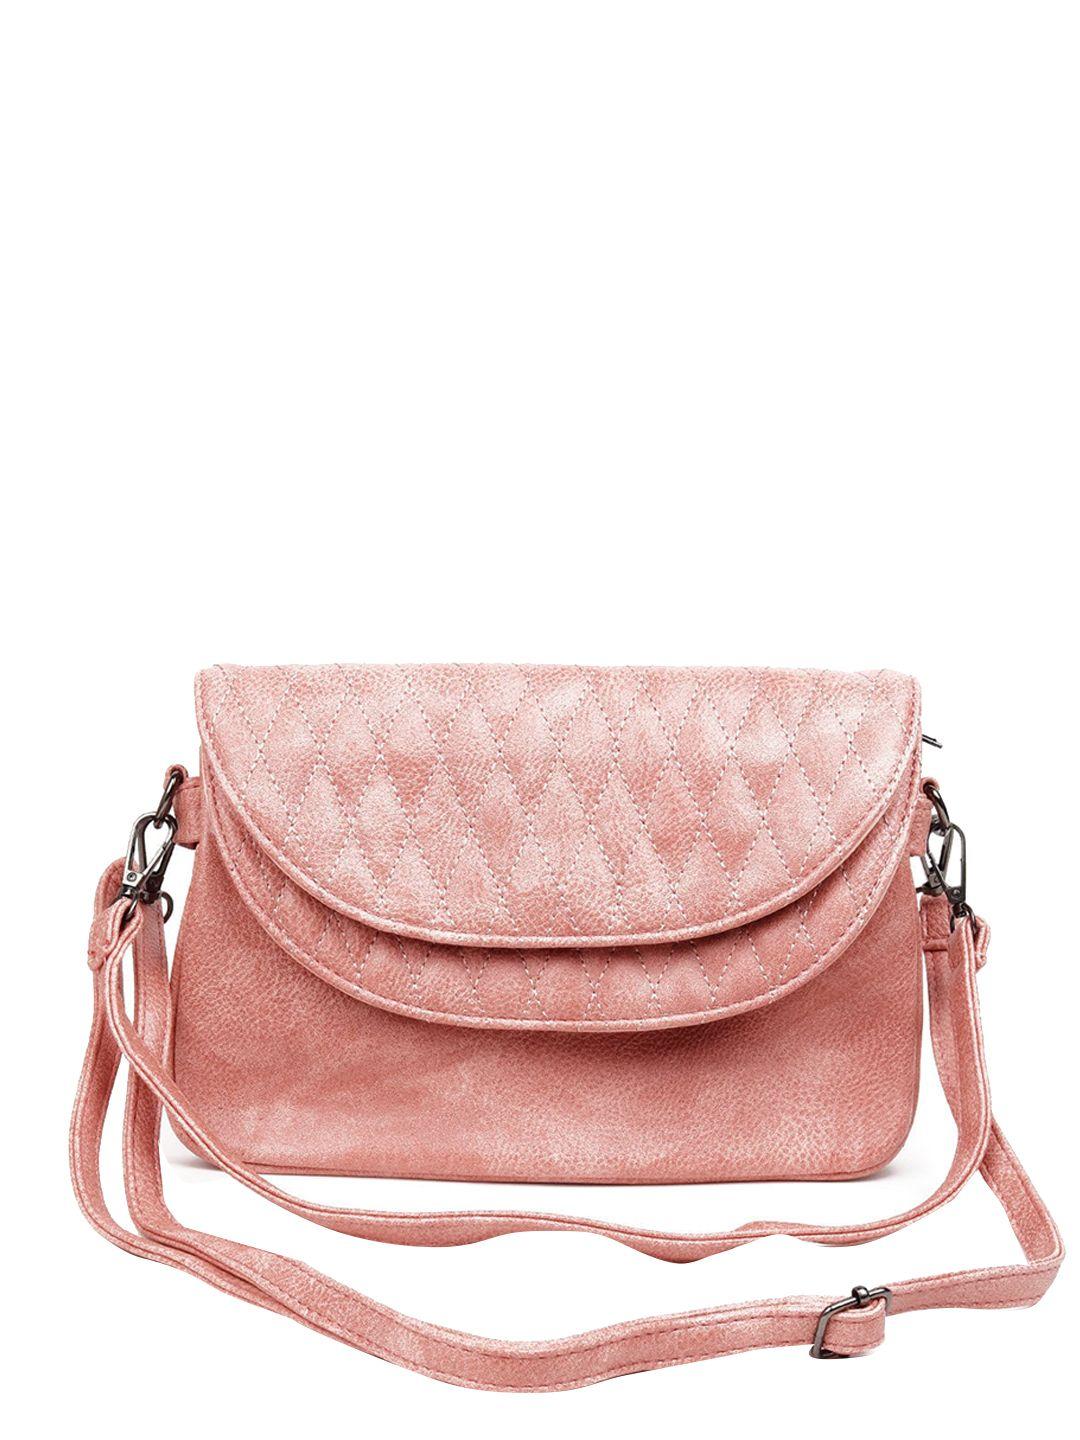 odette pink handheld bag